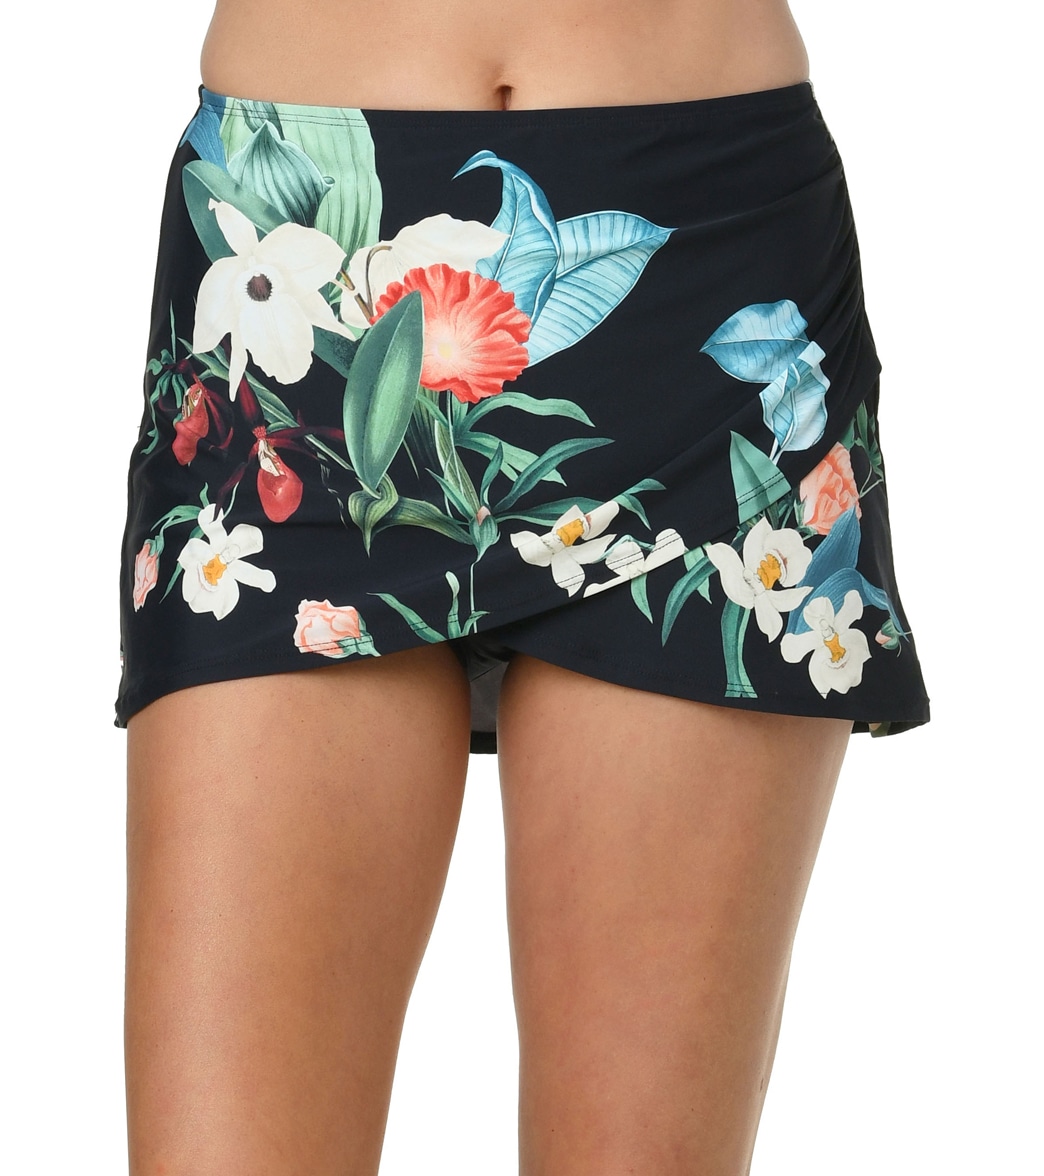 Jantzen Women's Botanical Cover Up Skirt - Black 10 Elastane/Polyamide - Swimoutlet.com